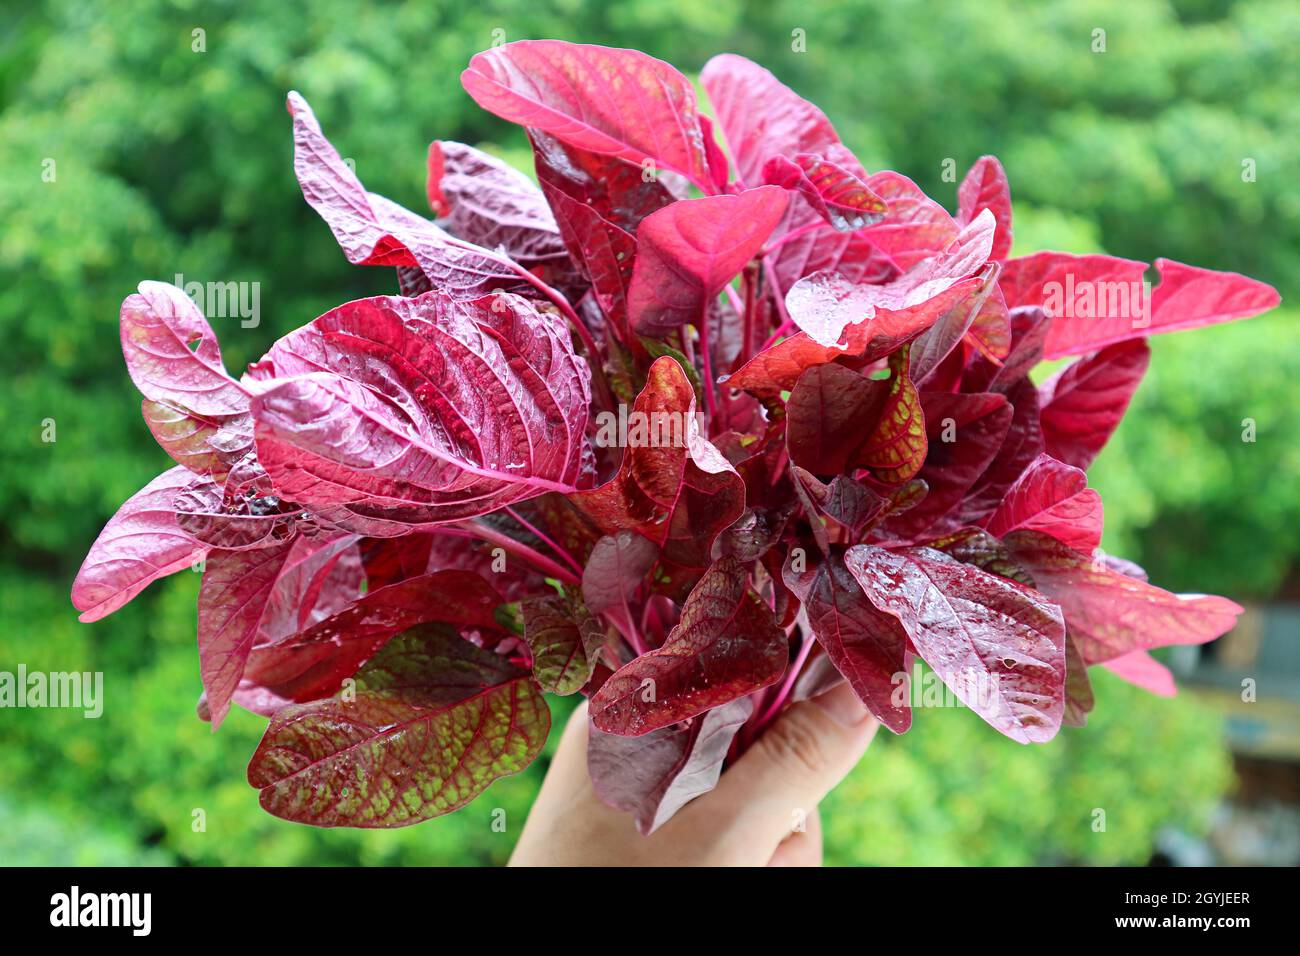 Manojo de color vibrante Espinaca roja fresca o en la mano contra follaje verde borroso Foto de stock